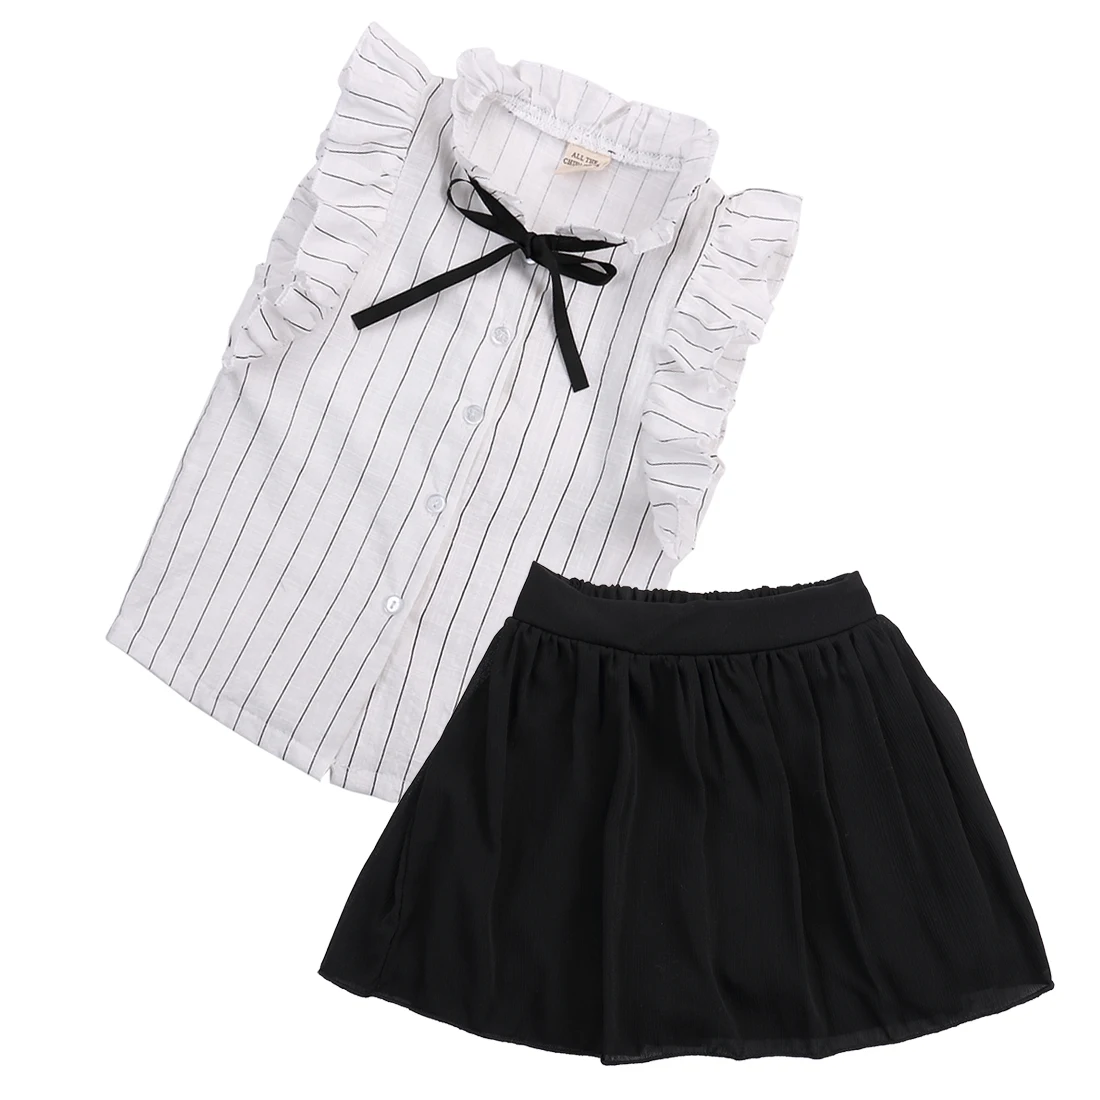 Emmaaby/комплект из 2 предметов платье для девочек Детские топы малышей + юбка